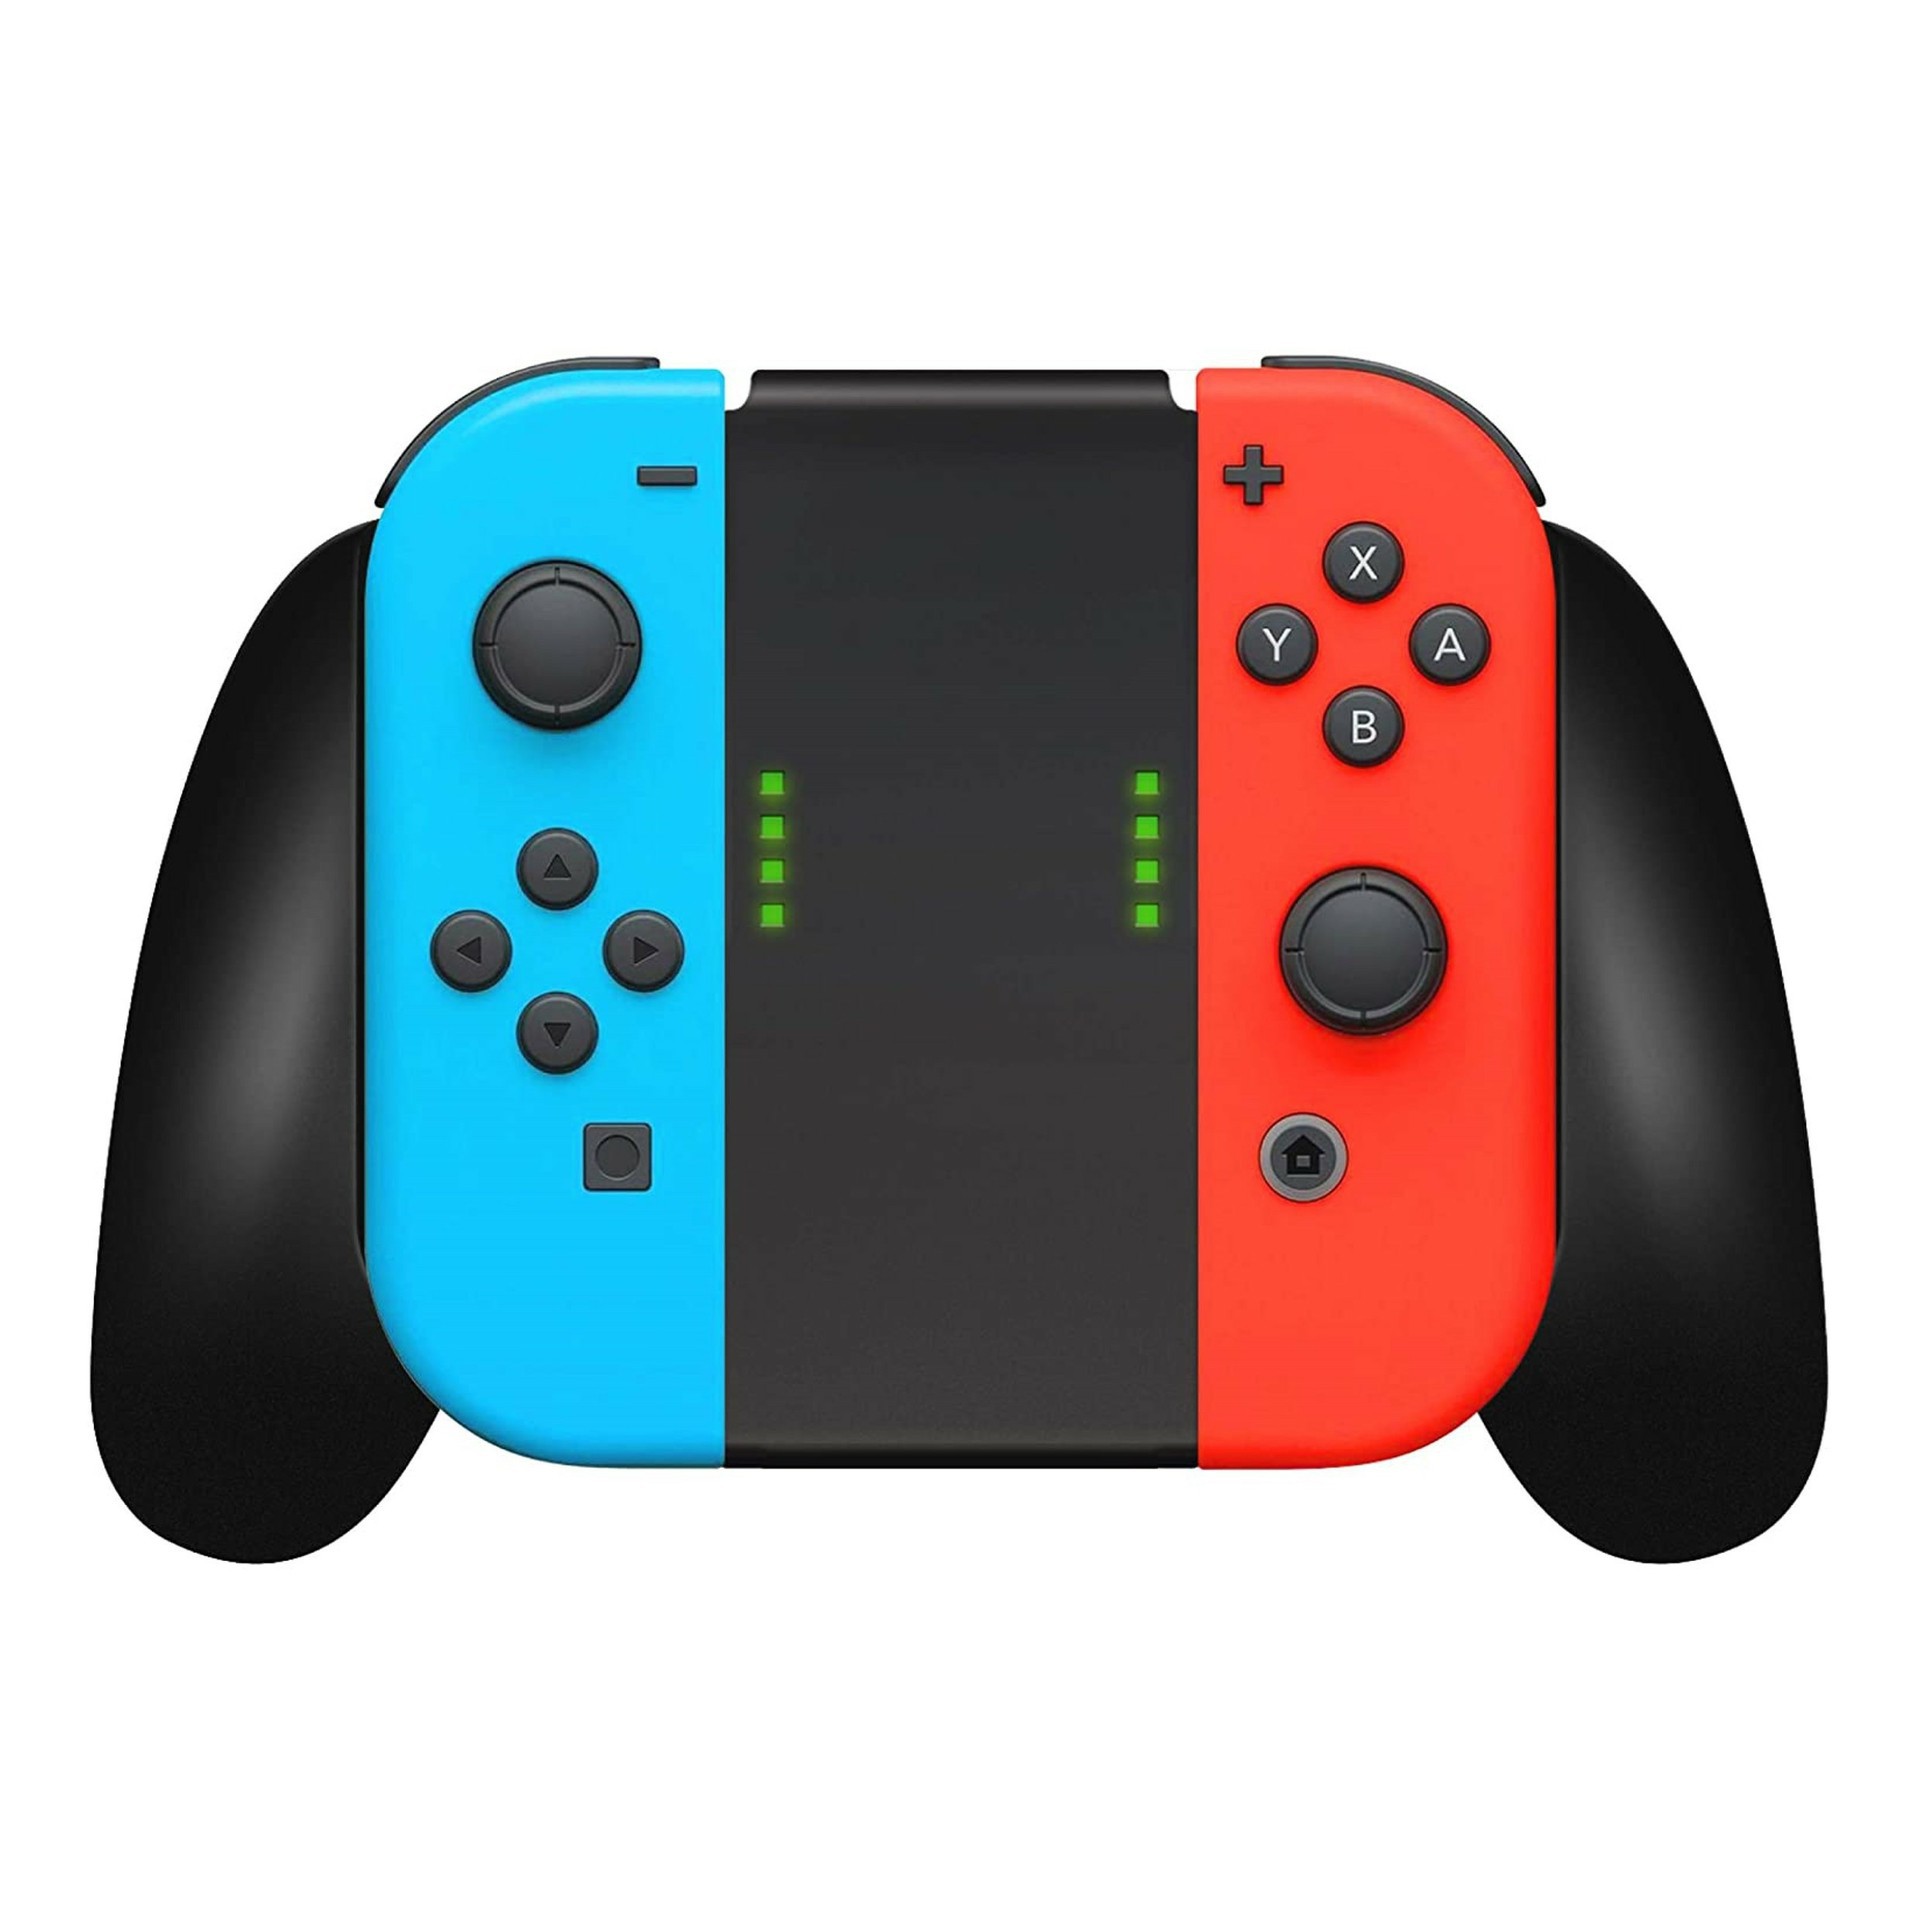 Nieuwe Wireless Joy-Con Controllers + Handgrip voor de Nintendo Switch - Rood/Blauw - Nintendo Switch Hardware